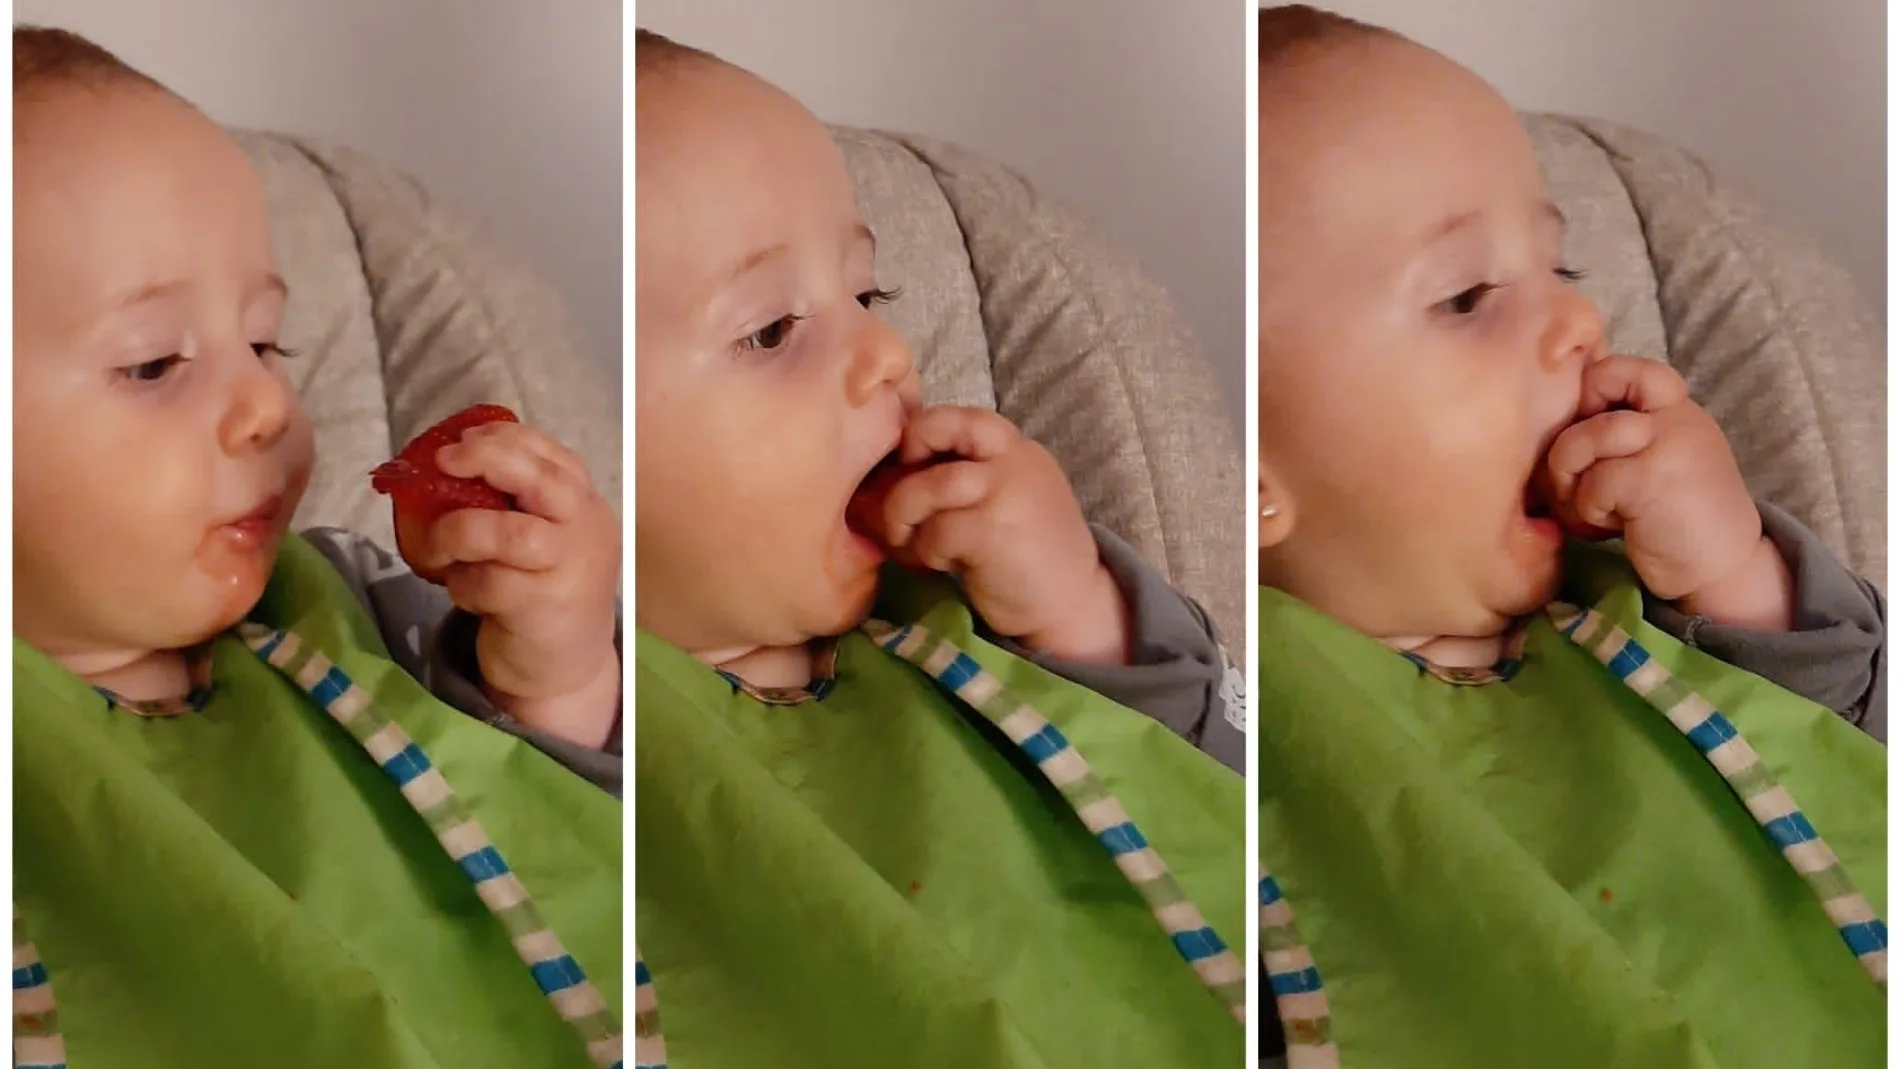 Dejarle comer a los bebés con sus manos contribuye a su desarrollo motriz